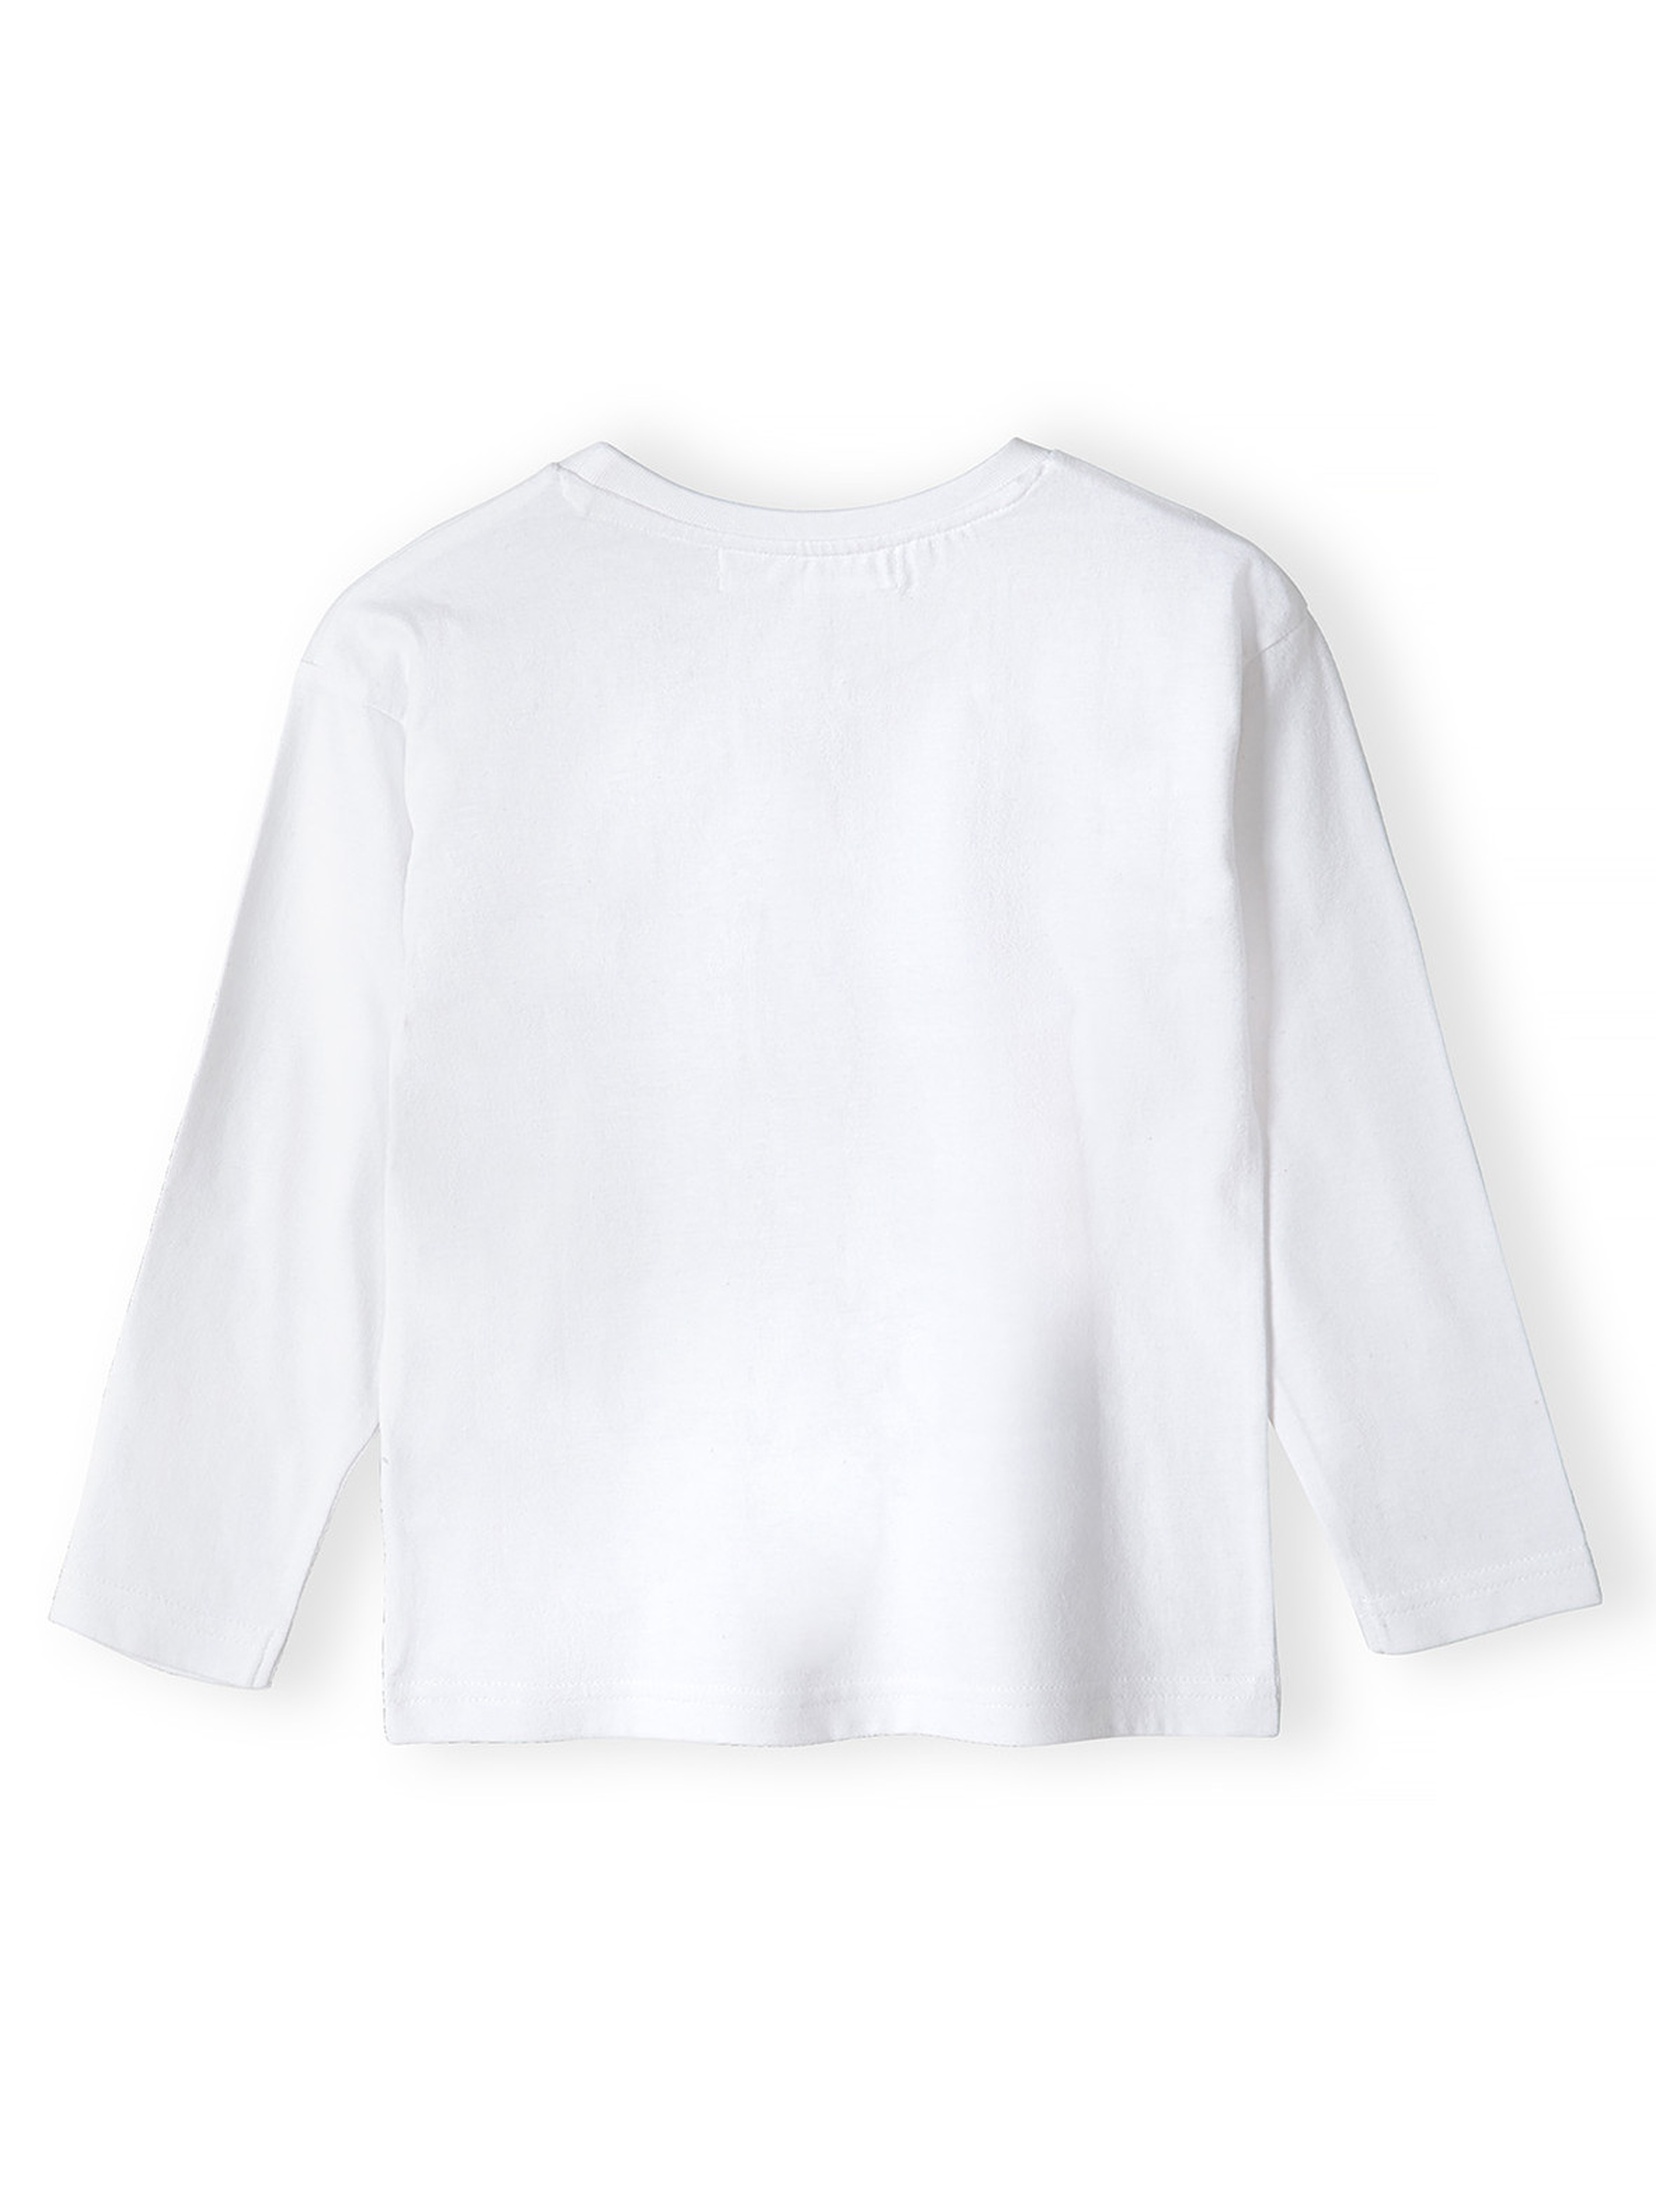 Biała bluzka z bawełny dla chłopca- Skills